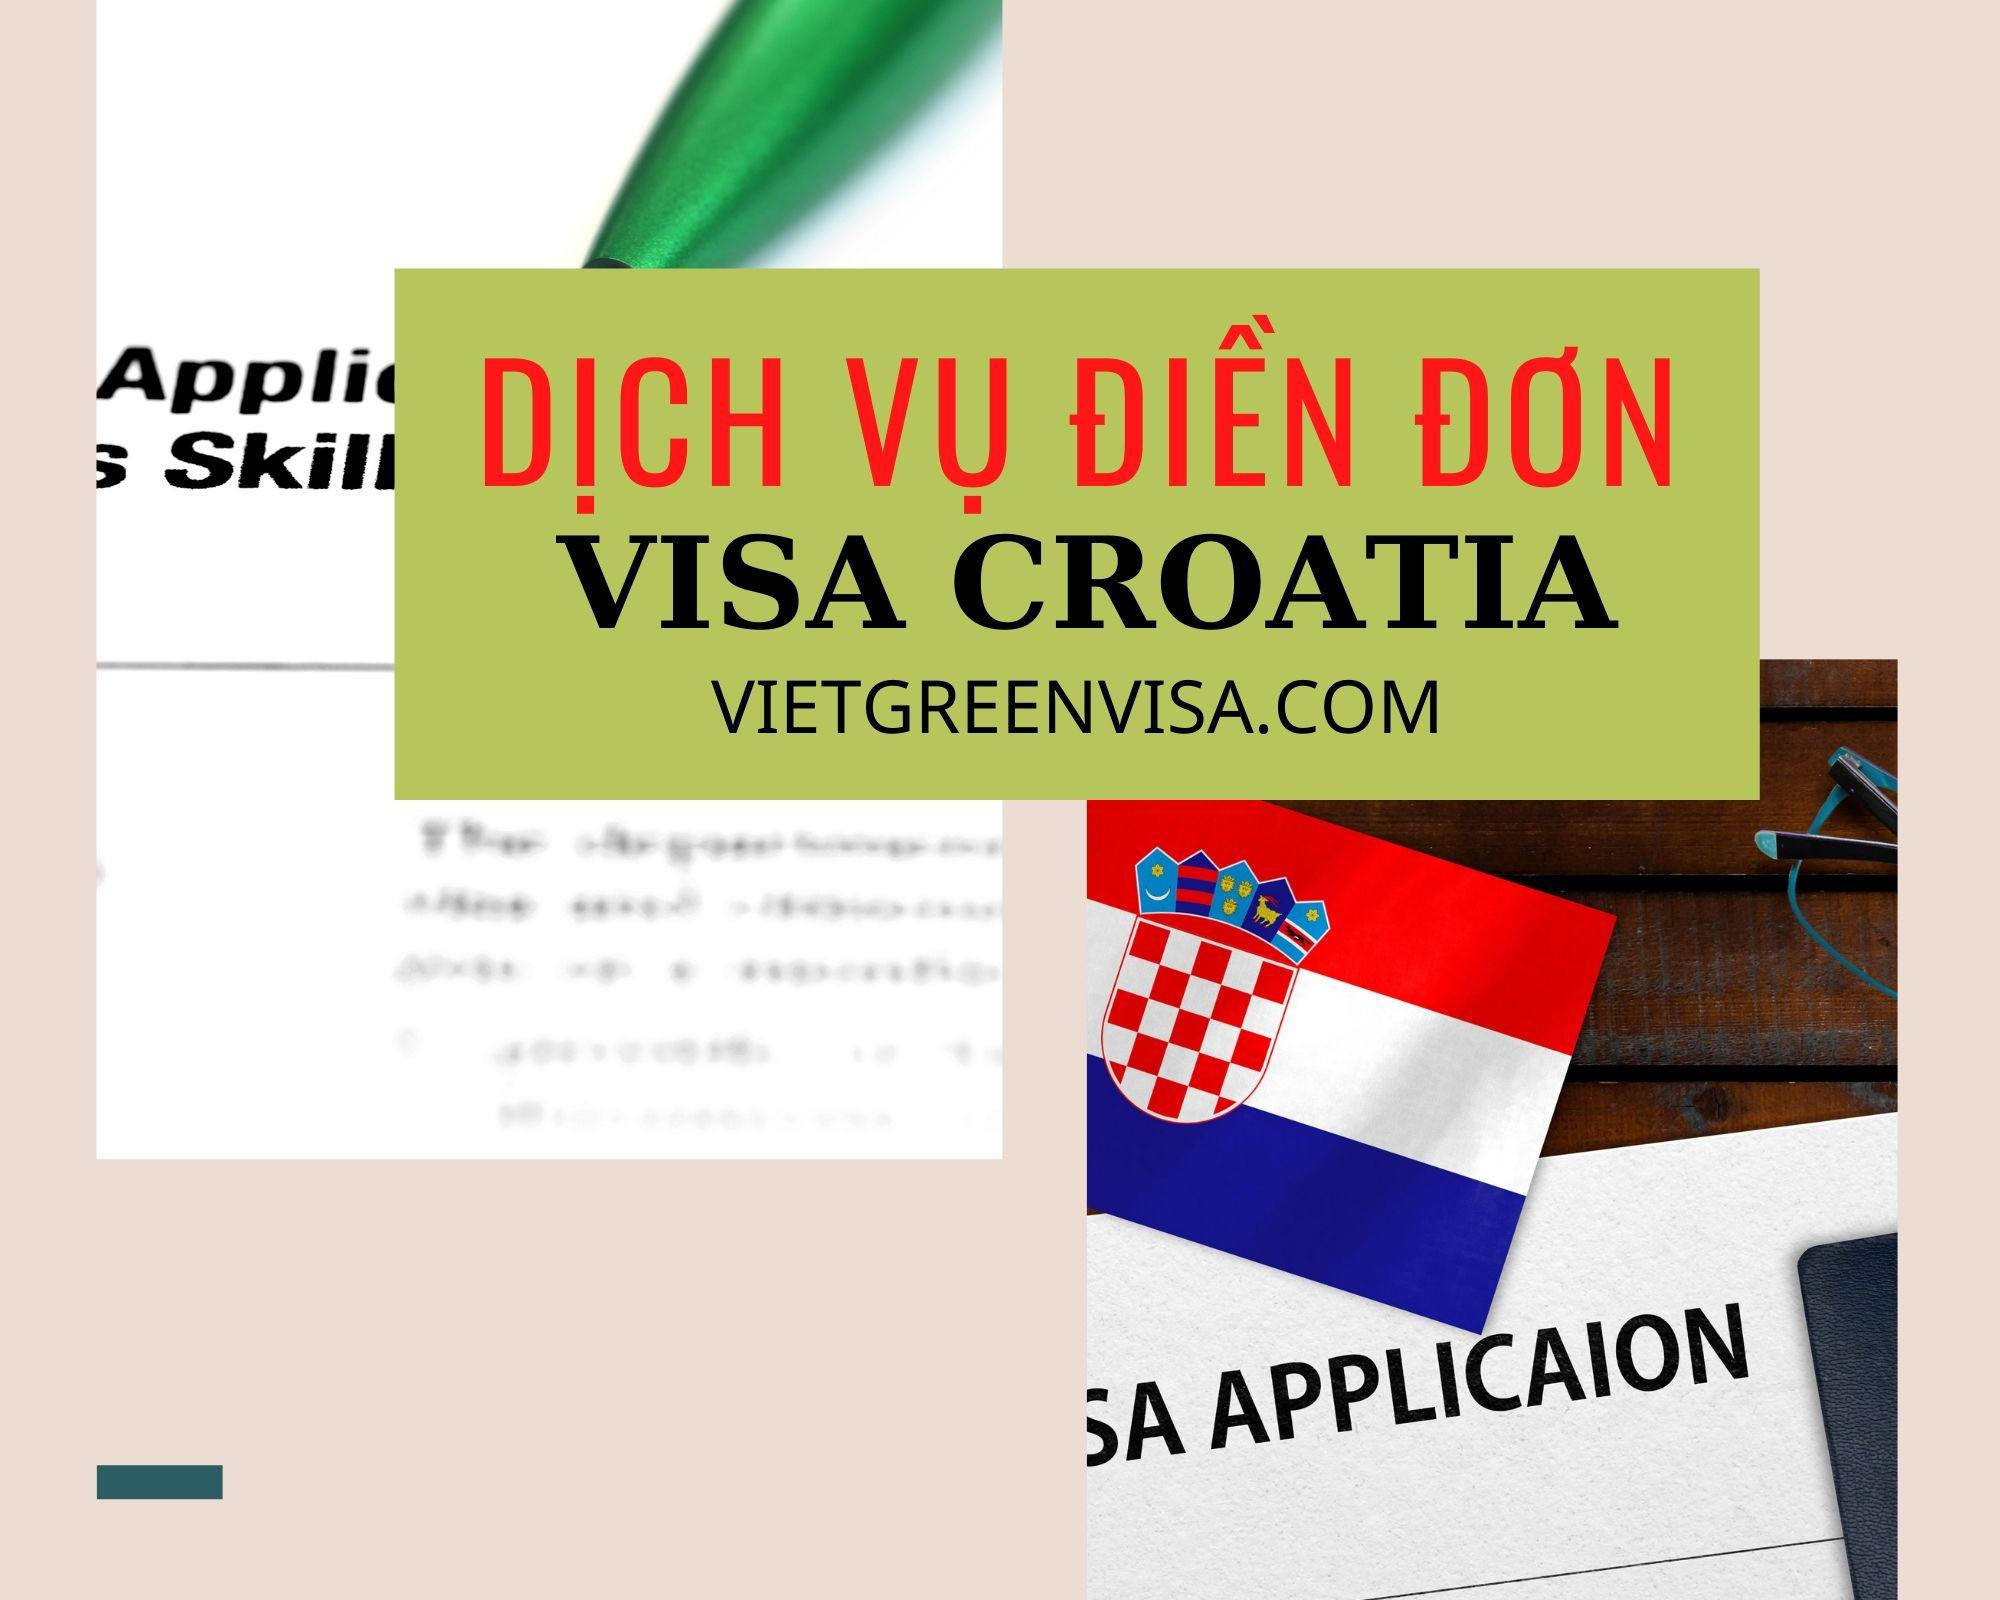 Hỗ trợ khai form điền đơn visa Croatia online nhanh chóng